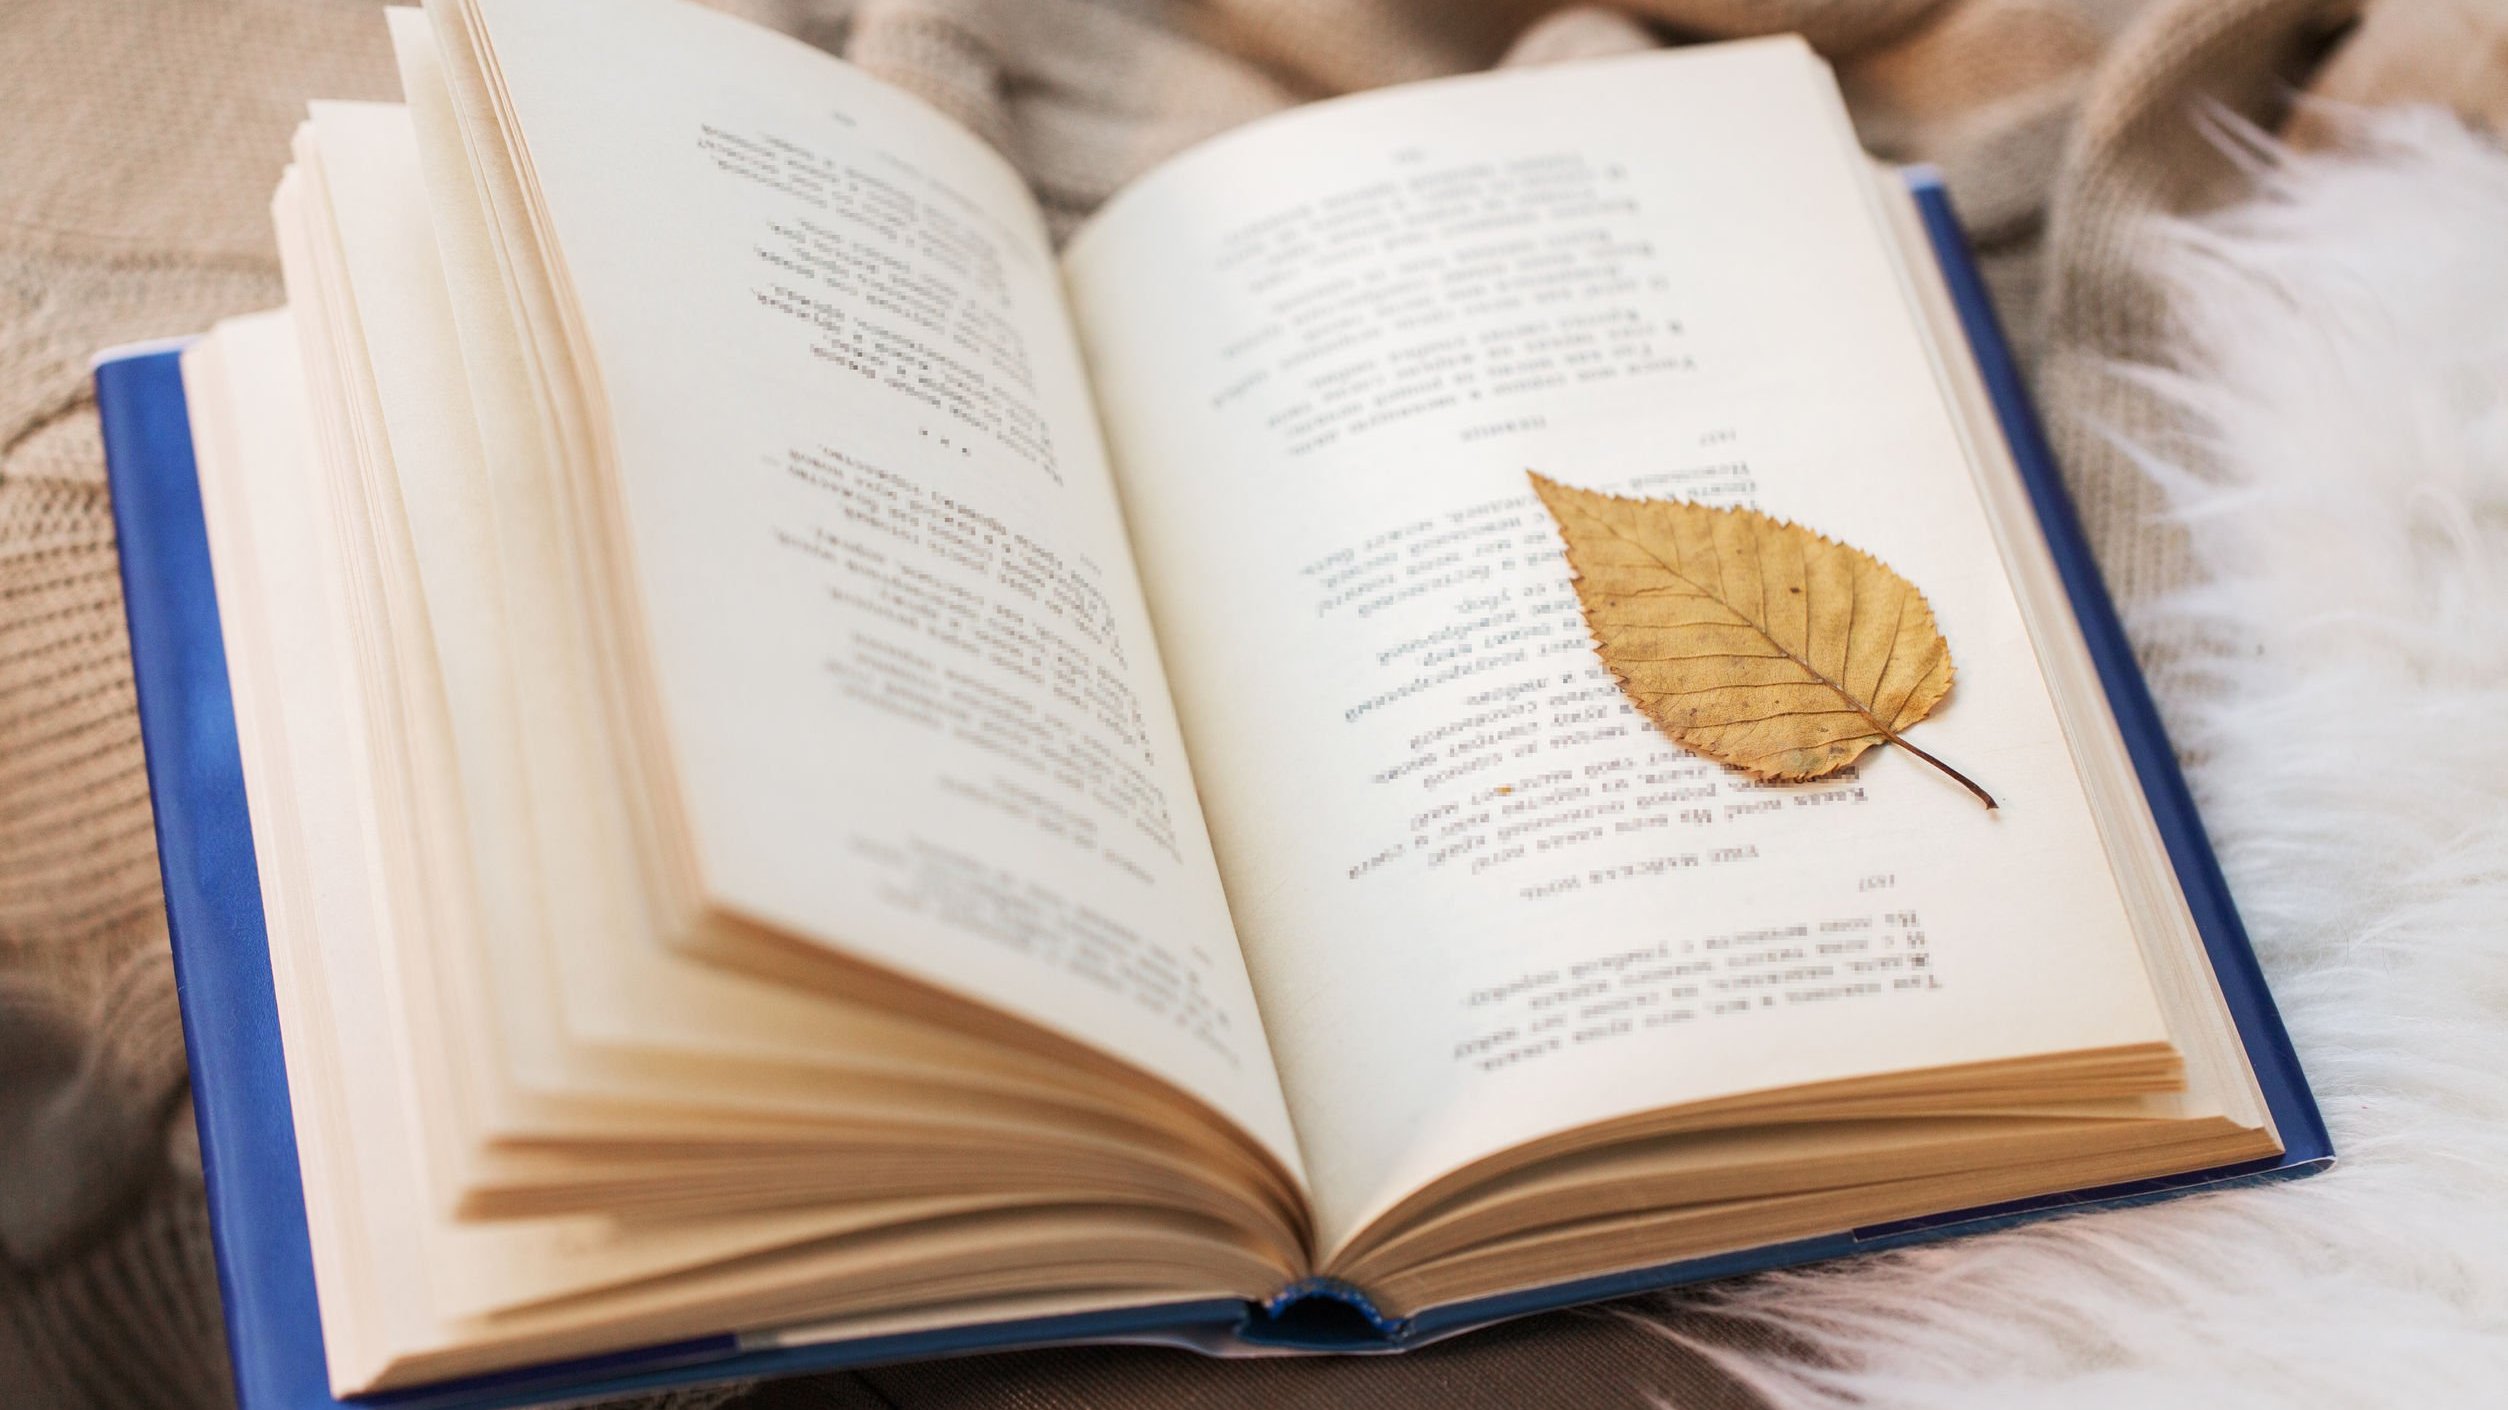 Livro aberto de poesias com uma folha de árvore